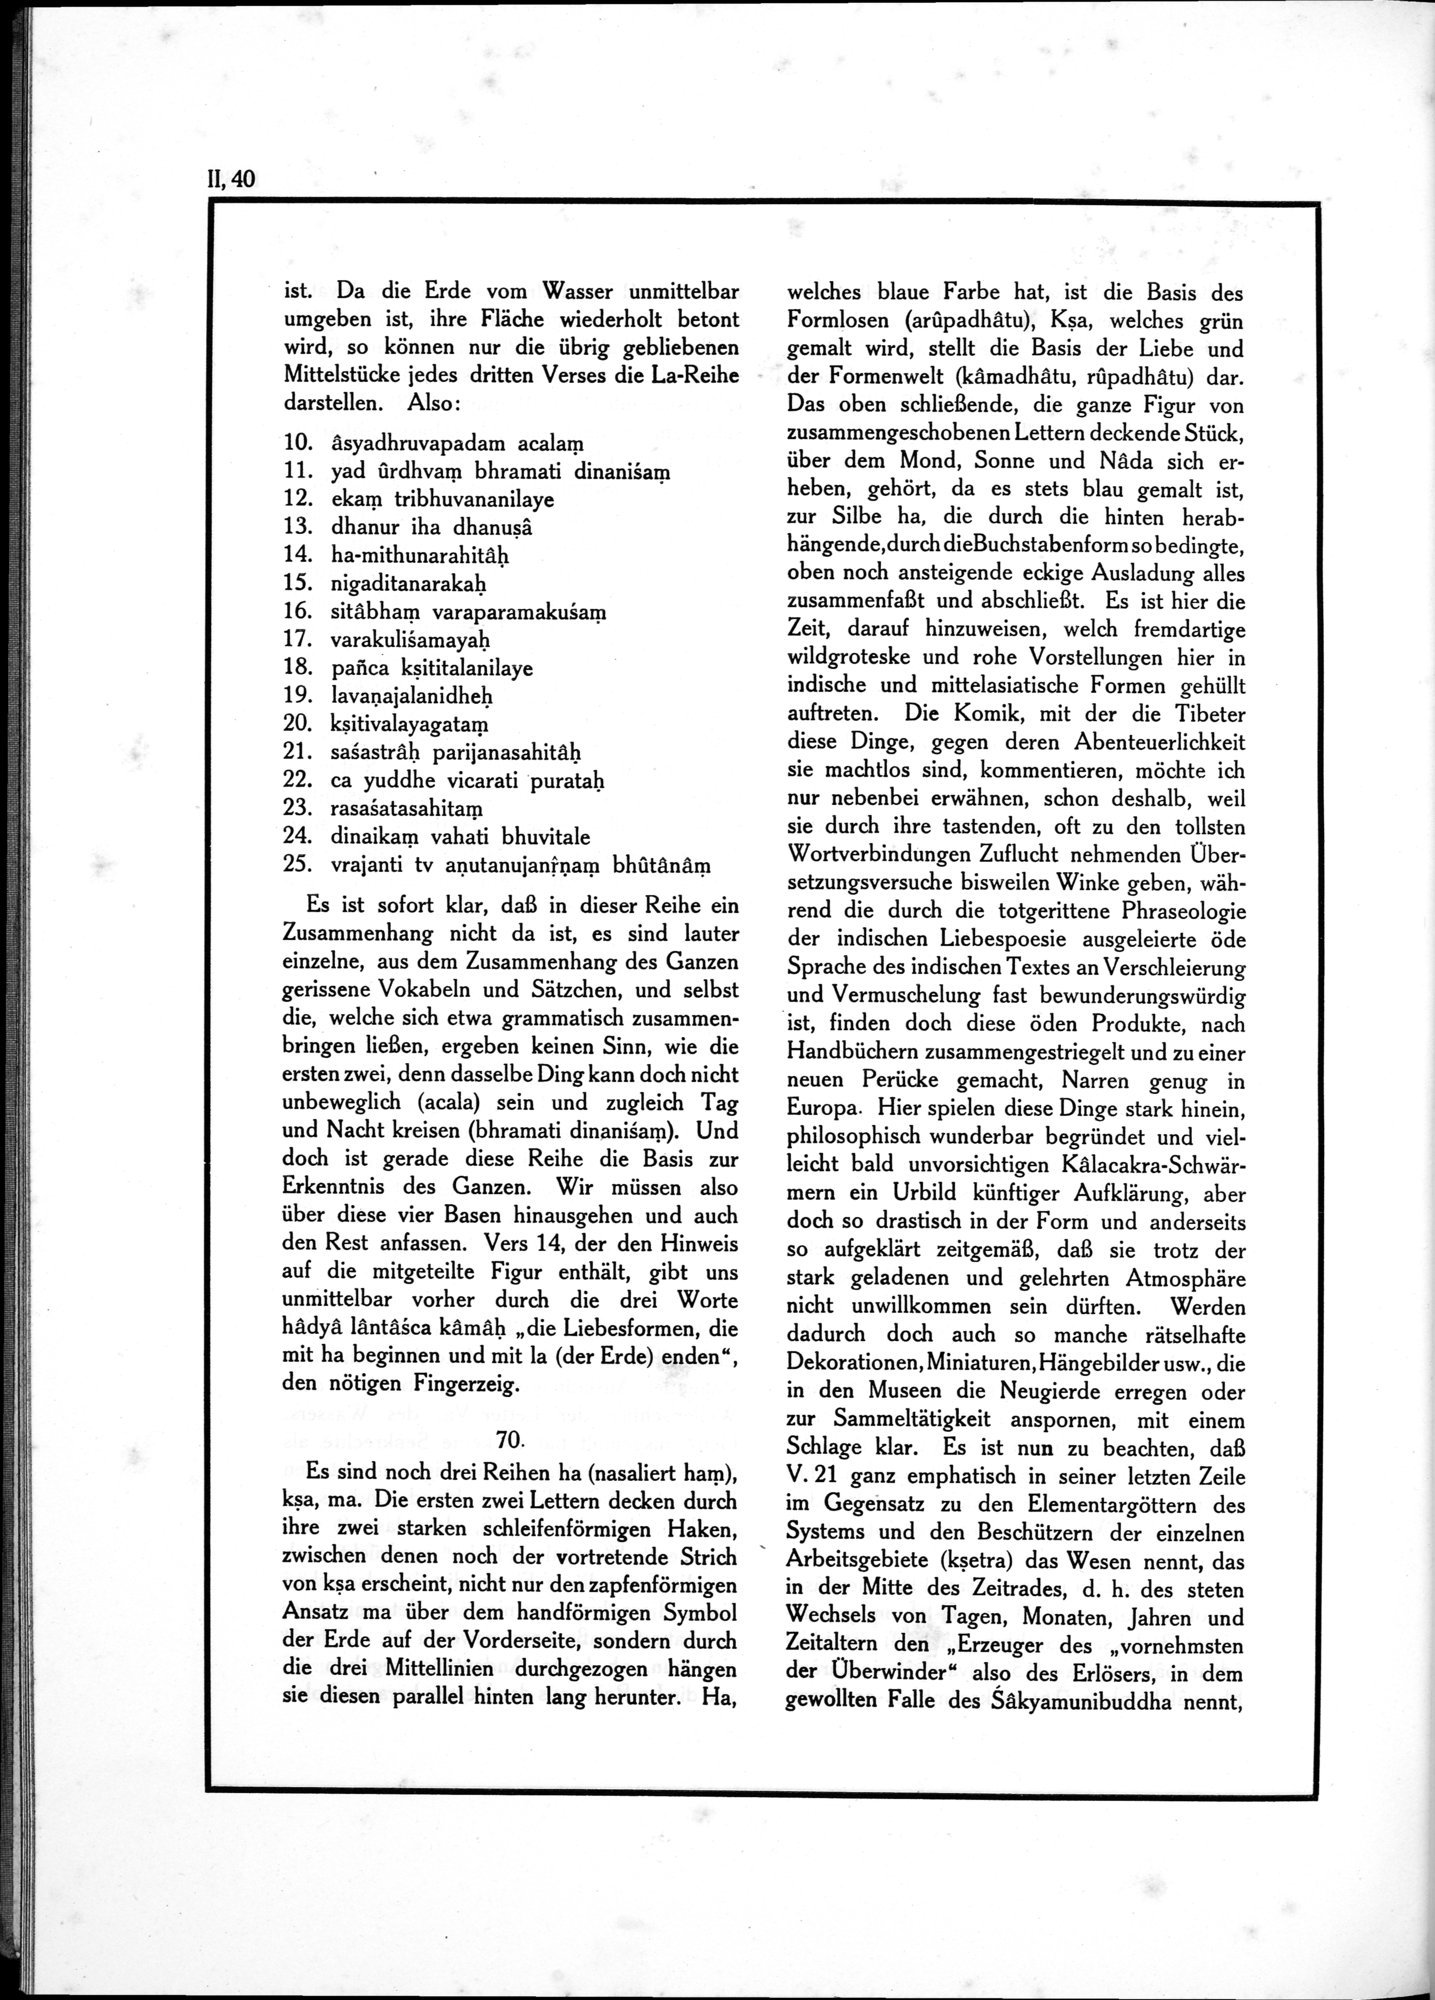 Die Teufel des Avesta und Ihre Beziehungen zur Ikonographie des Buddhismus Zentral-Asiens : vol.1 / Page 496 (Grayscale High Resolution Image)